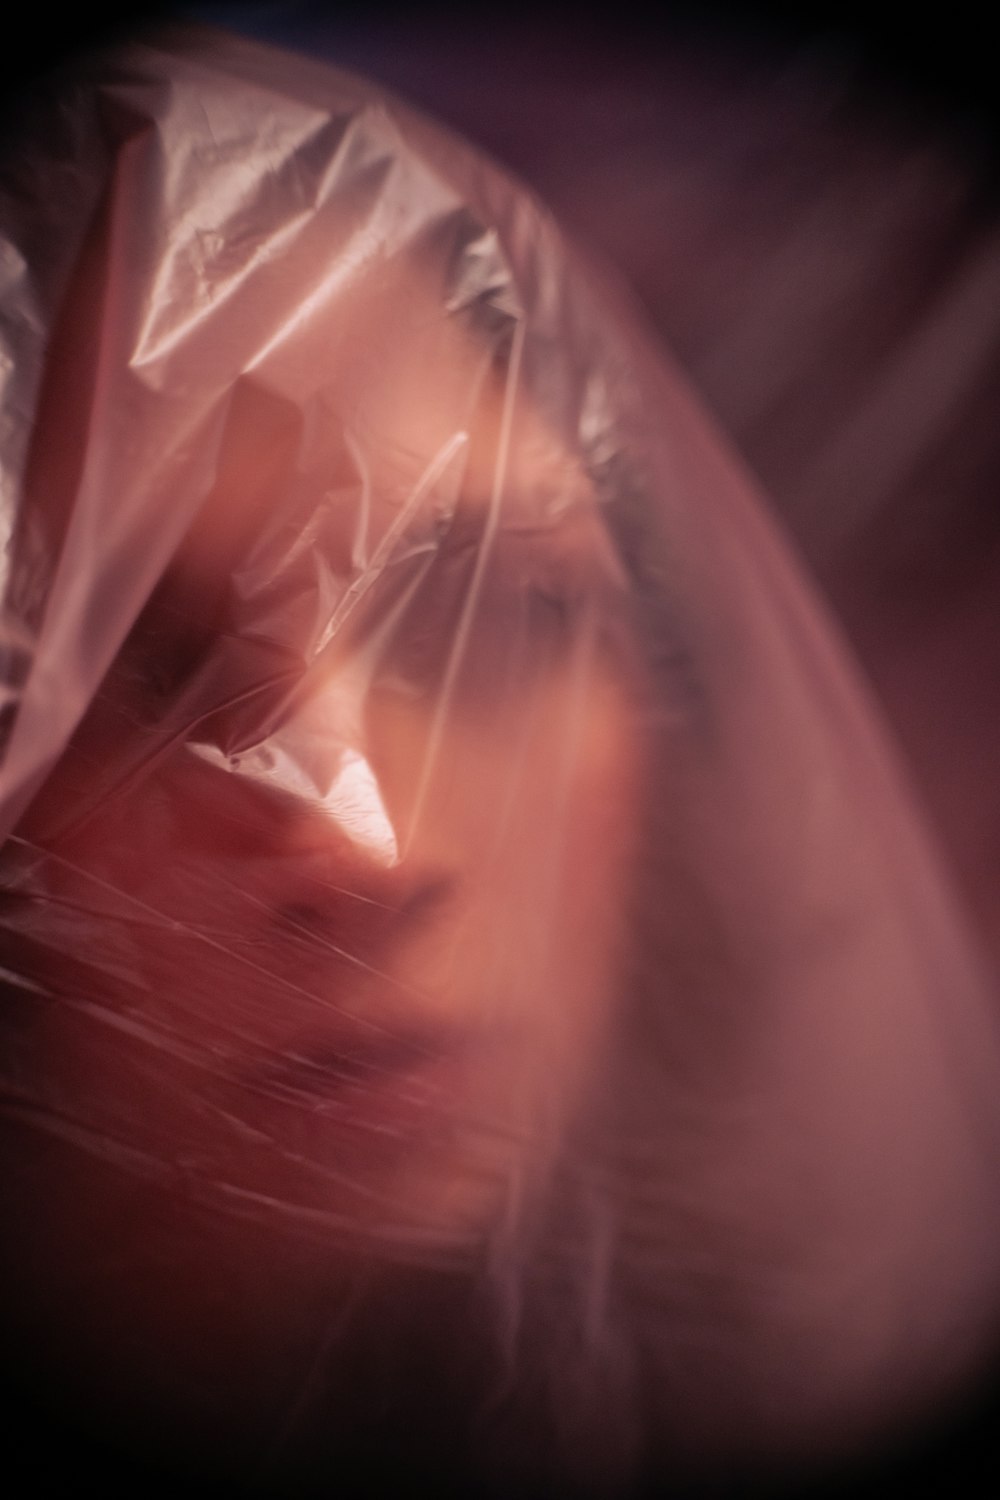 プラスチックで頭を覆った女性の顔のぼやけた写真